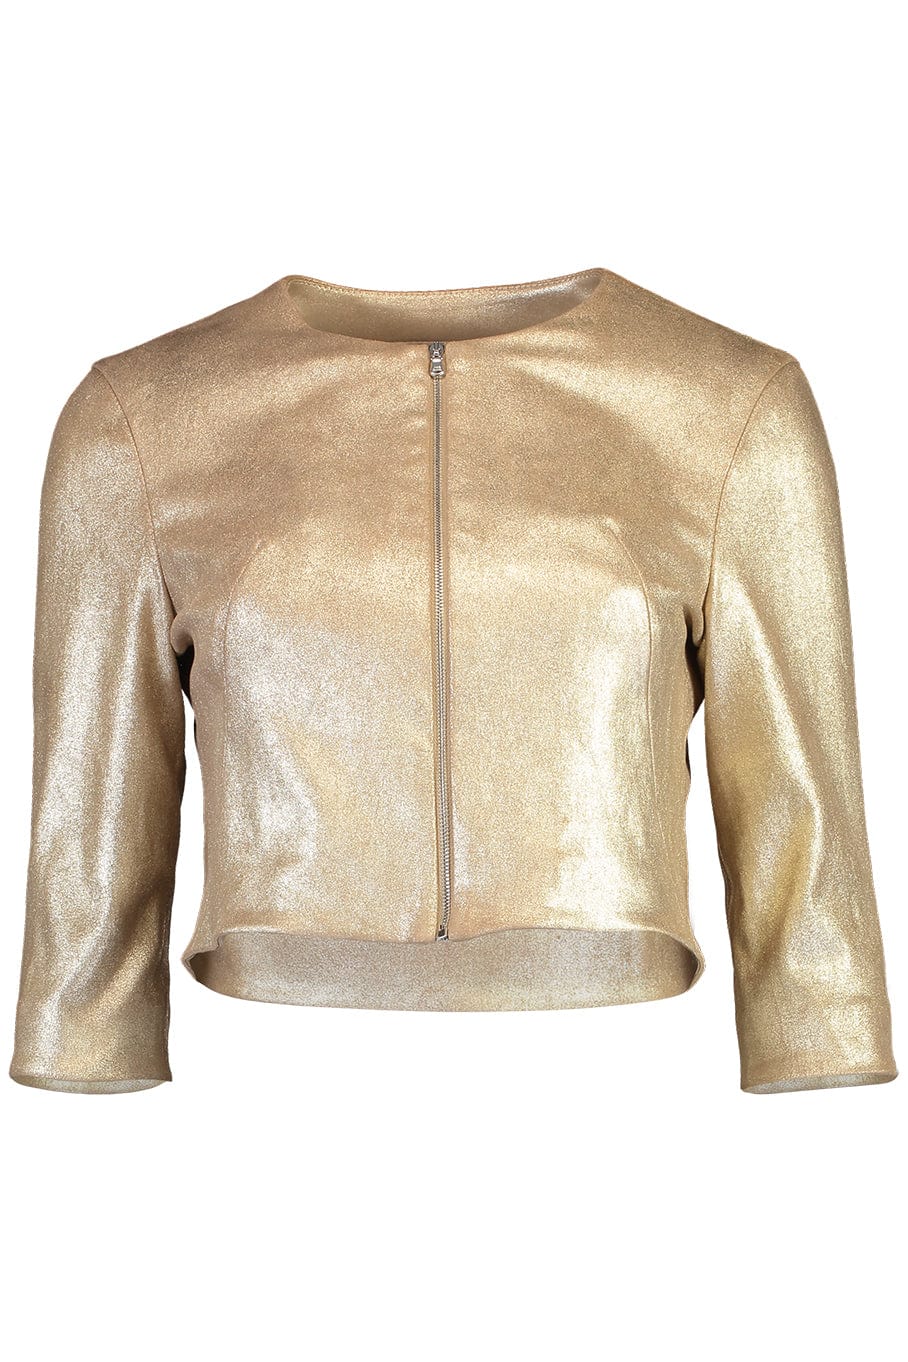 SUSAN BENDER-Stretch Leather Cardigan Jacket - Pale Gold-